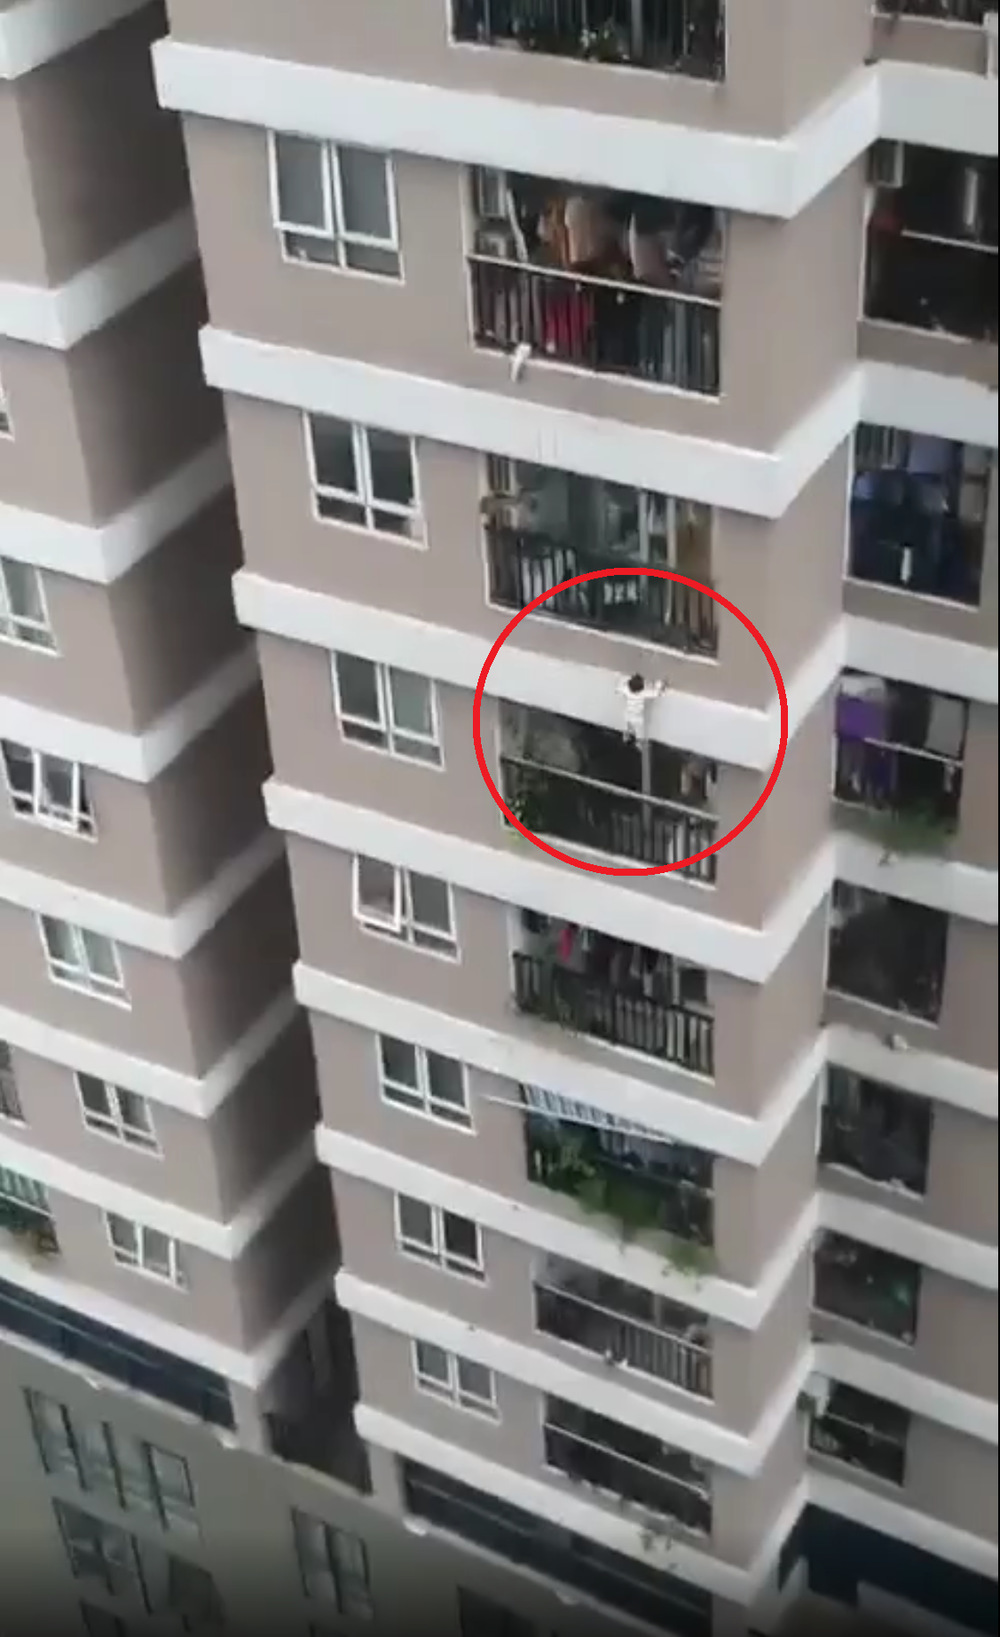  
Vụ cháu bé rơi từ tầng 12 chung cư Nguyễn Huy Tưởng trước đó. (Ảnh: Cắt từ clip)